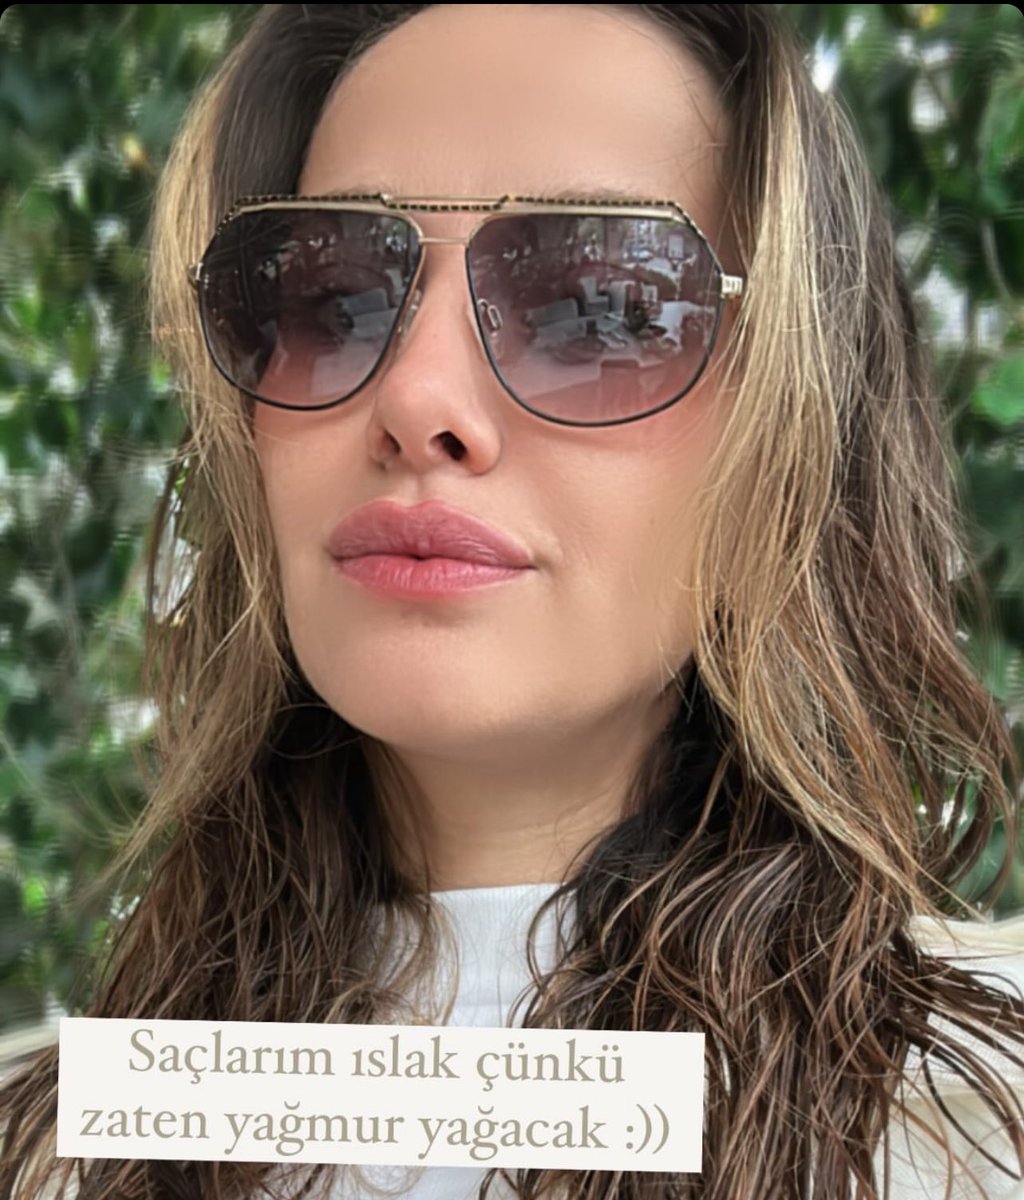 Bazı kadınlar gözlük kadınıdır siz seversiniz sevmezsiniz ama ben en çok gözlük yakışan kadınları severim 
#iremhelvacıoğlu